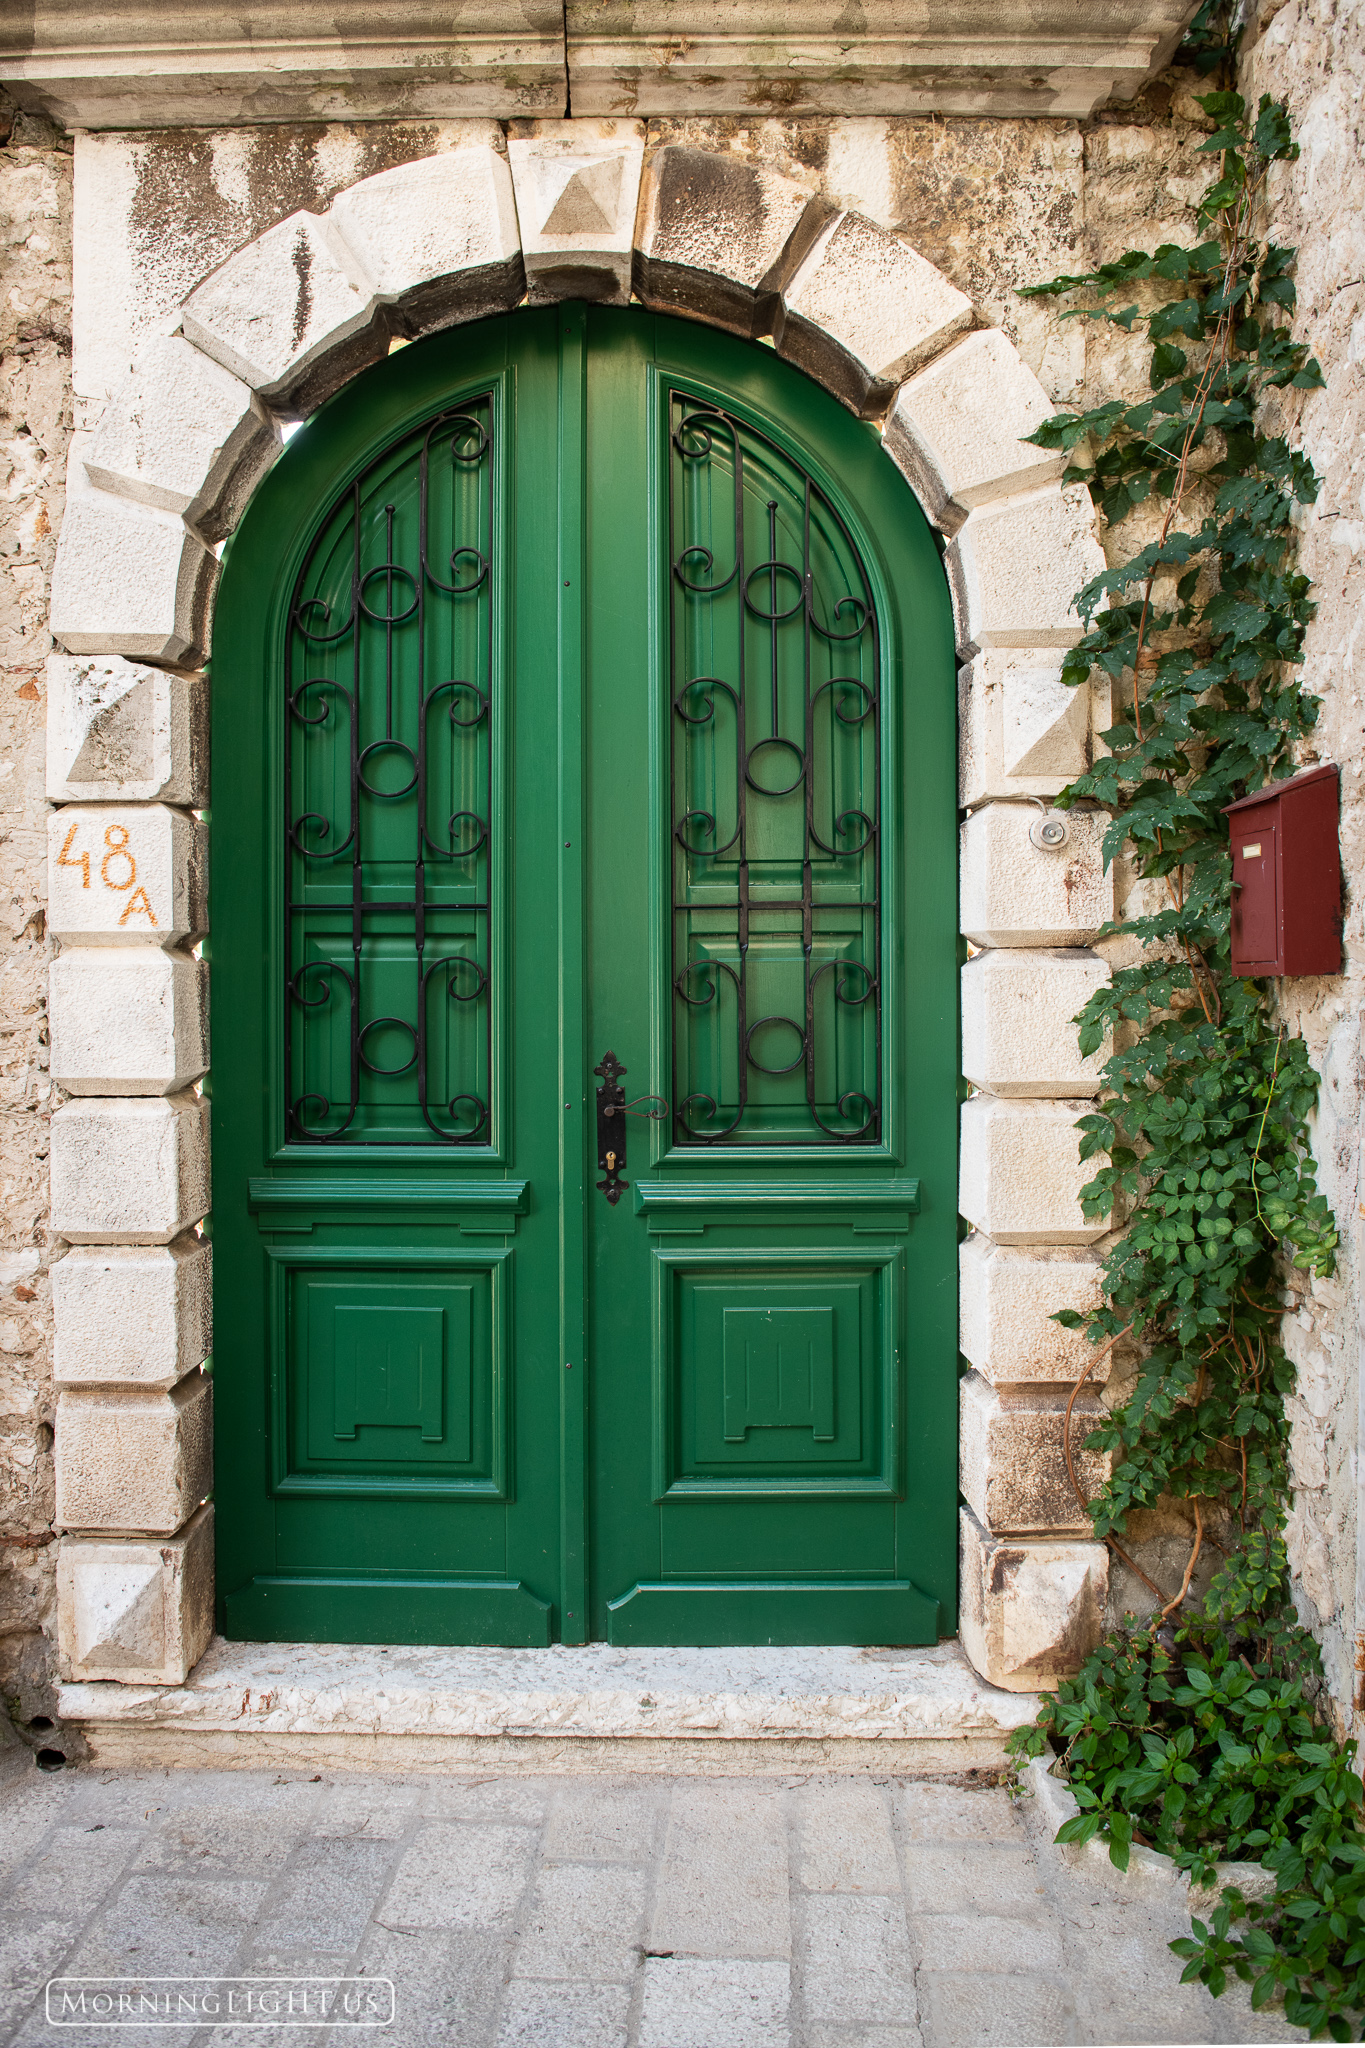 One of the many interesting doorways in Rovijn, Croatia